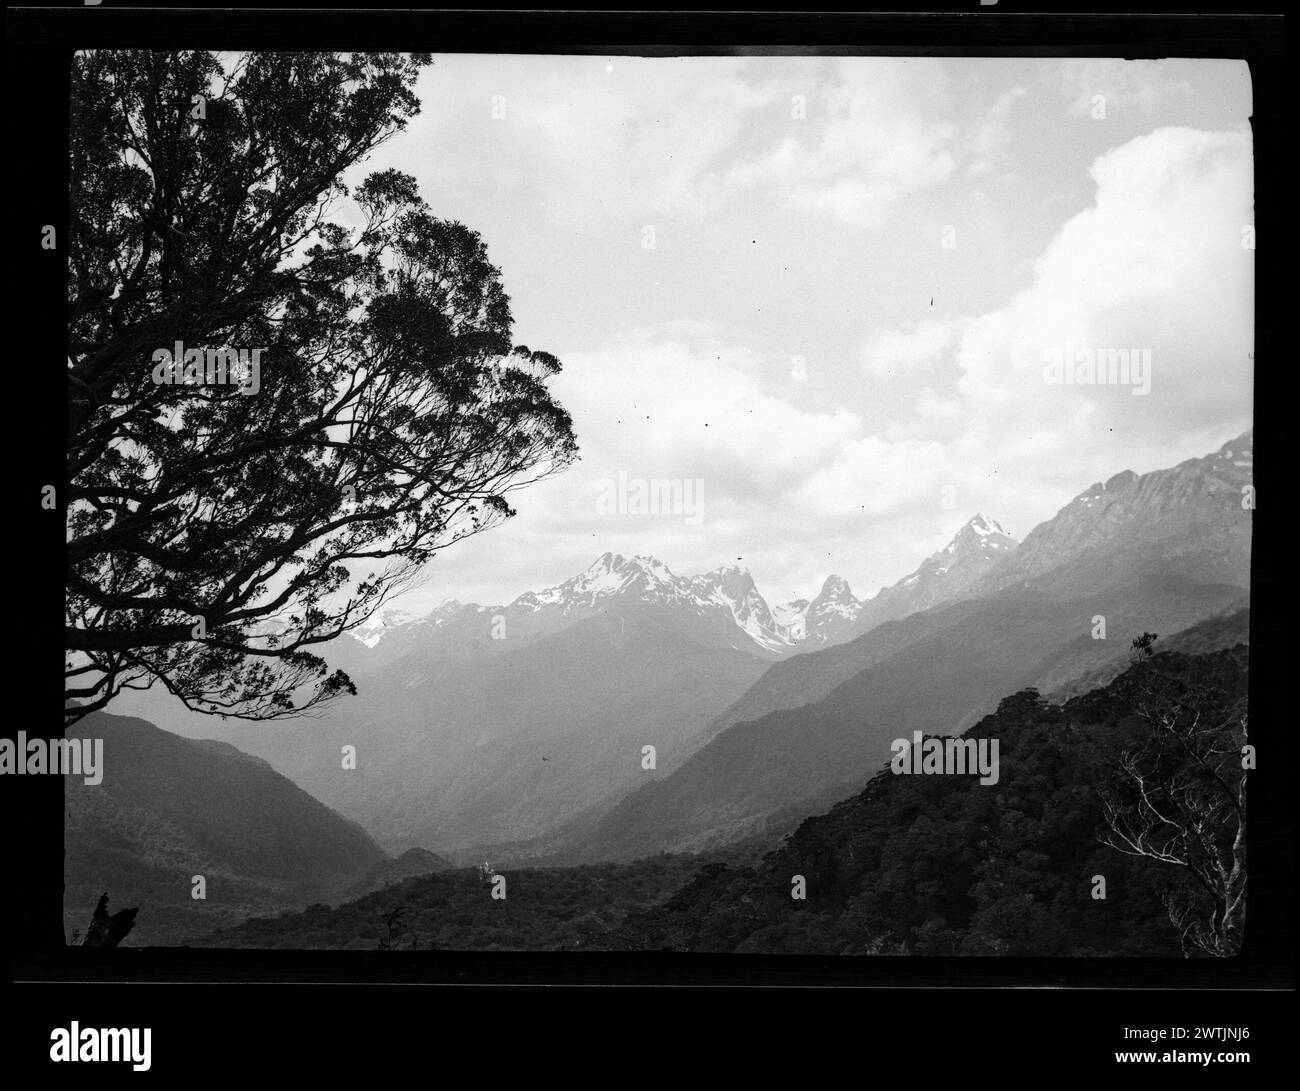 Negativi d'argento gelatina della valle di montagna boscosa, negativi in bianco e nero Foto Stock